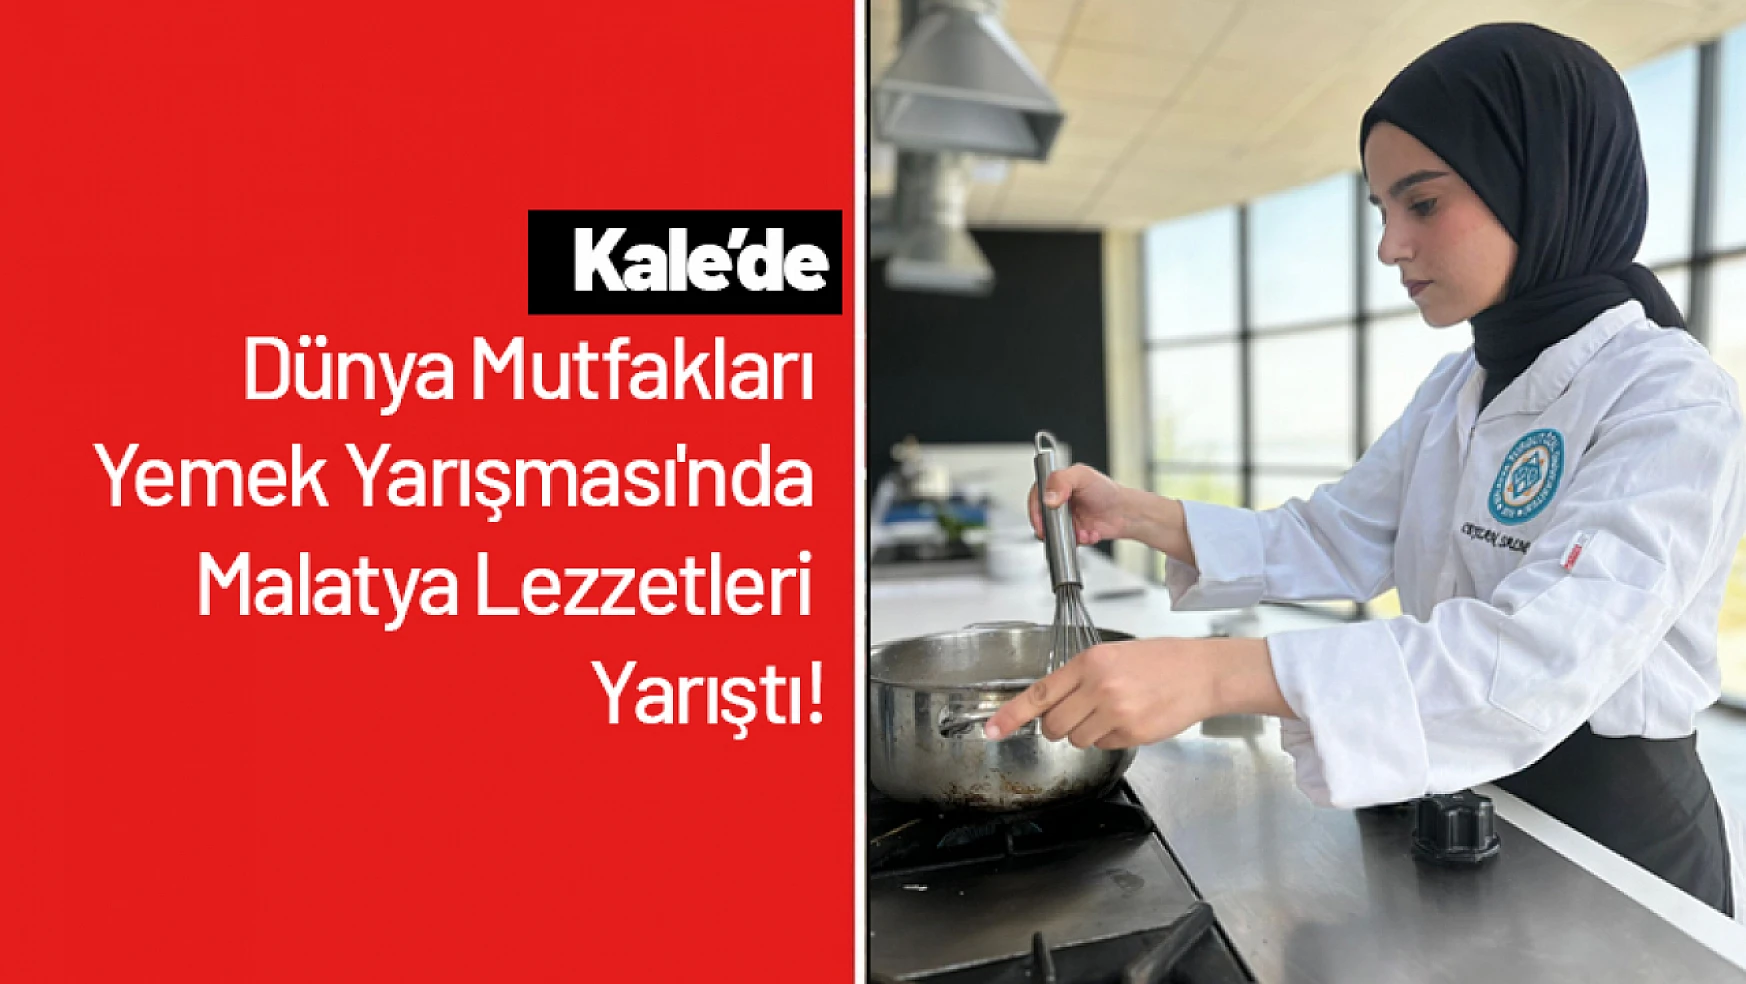 Dünya Mutfakları Yemek Yarışması'nda Malatya Lezzetleri Yarıştı!